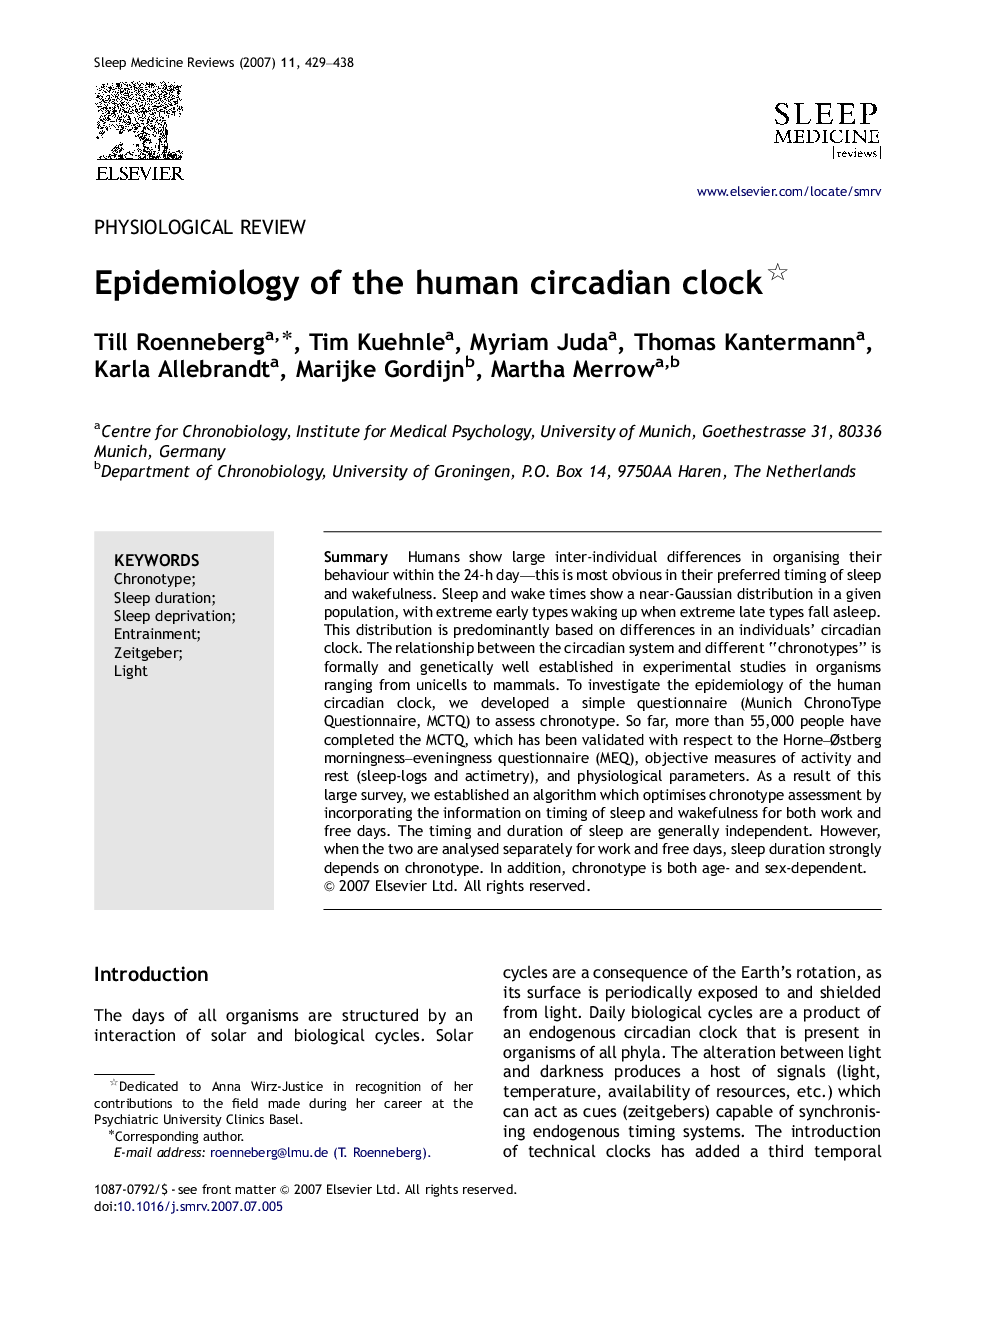 Epidemiology of the human circadian clock 